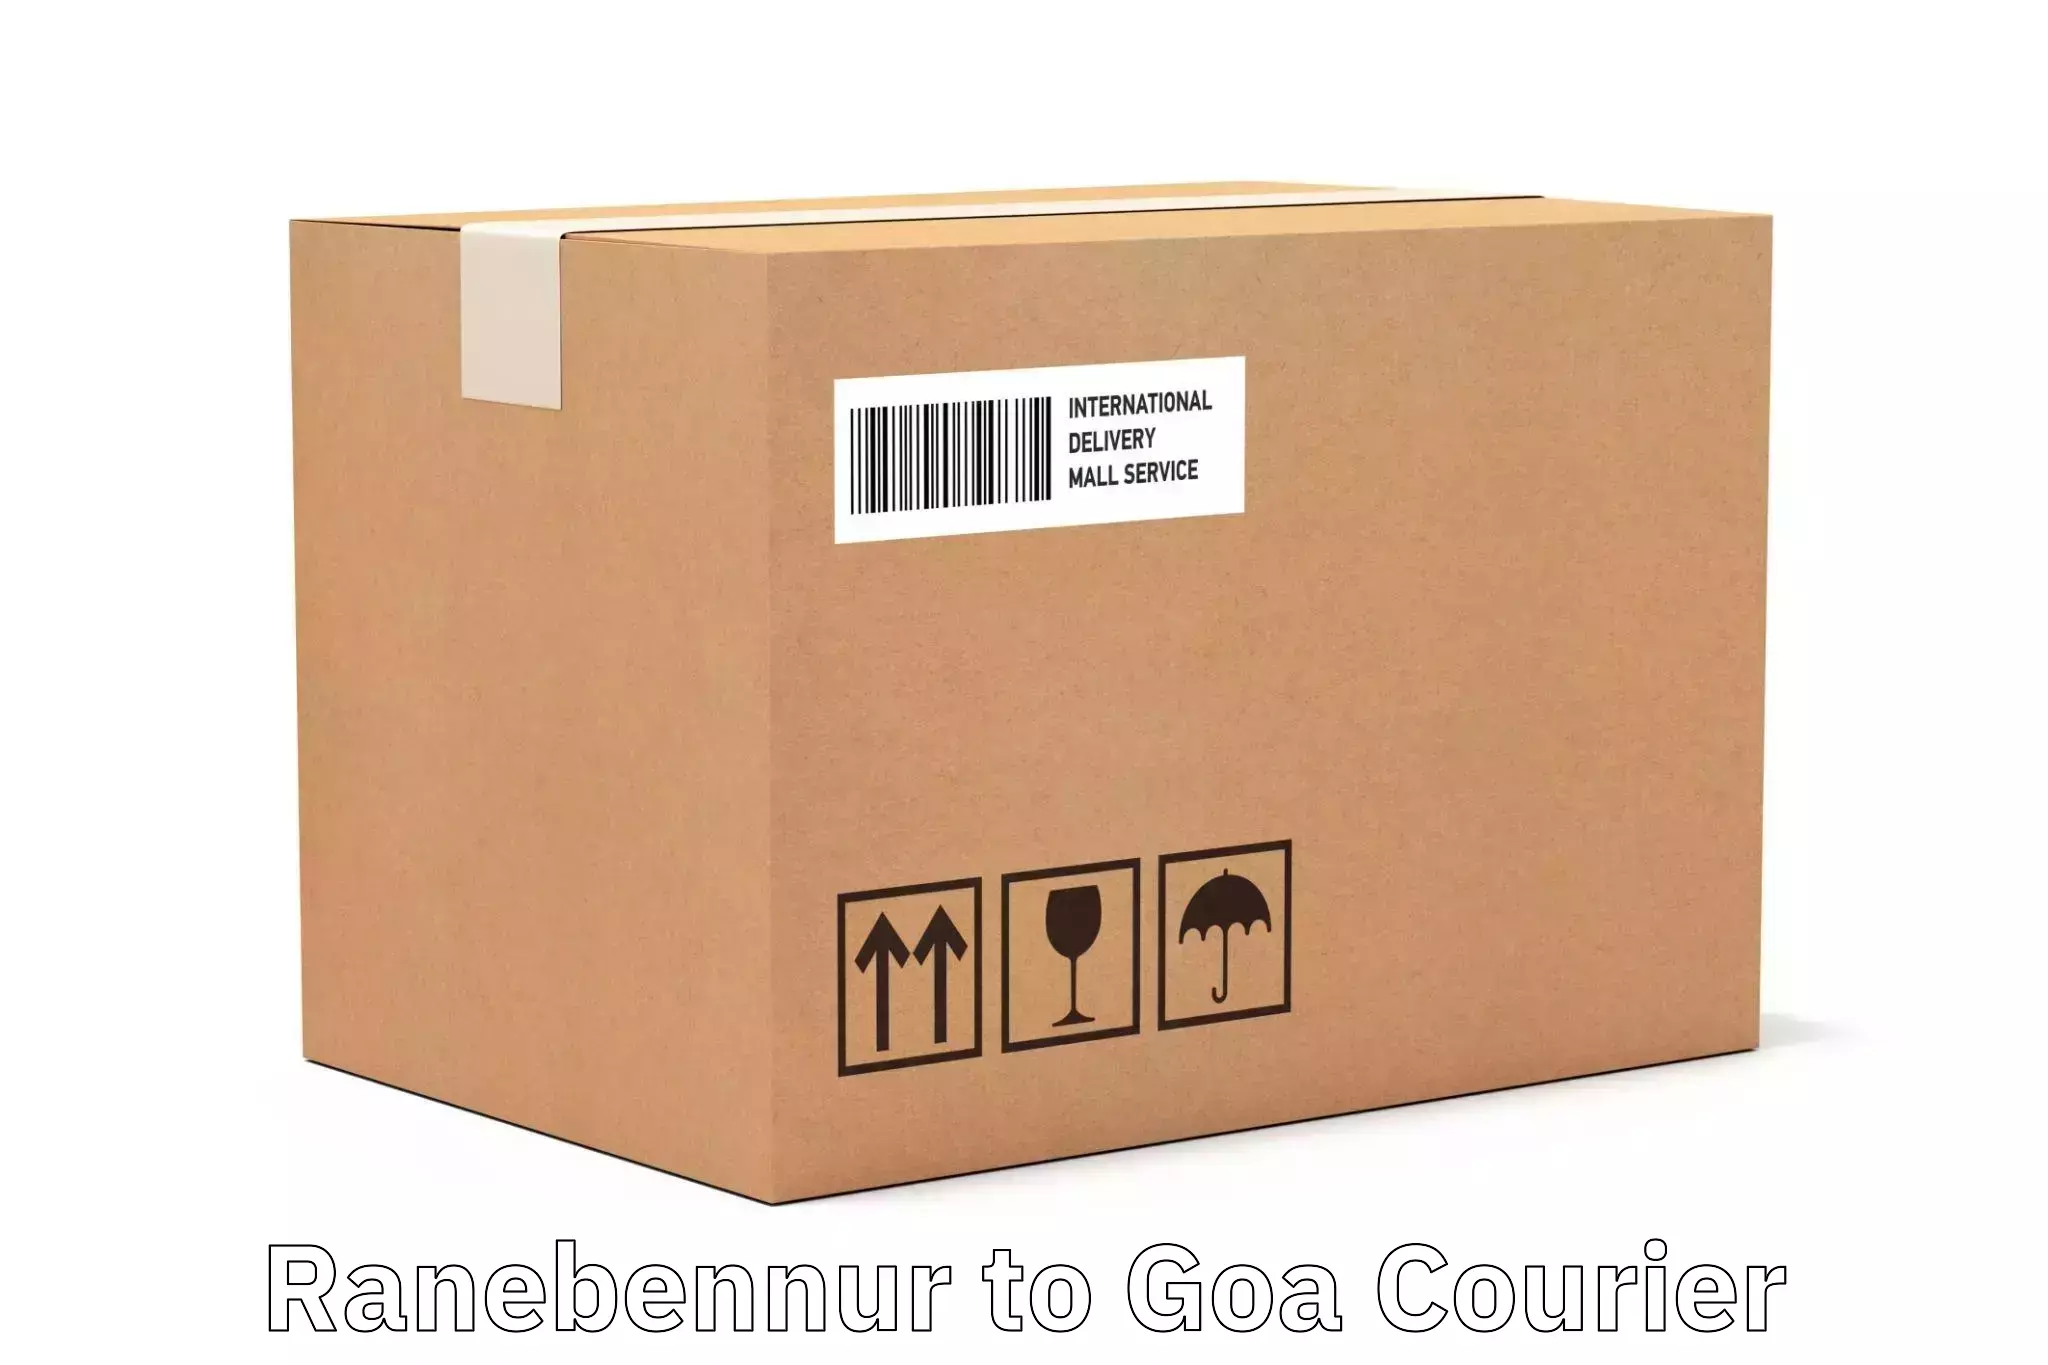 Courier app Ranebennur to Mormugao Port